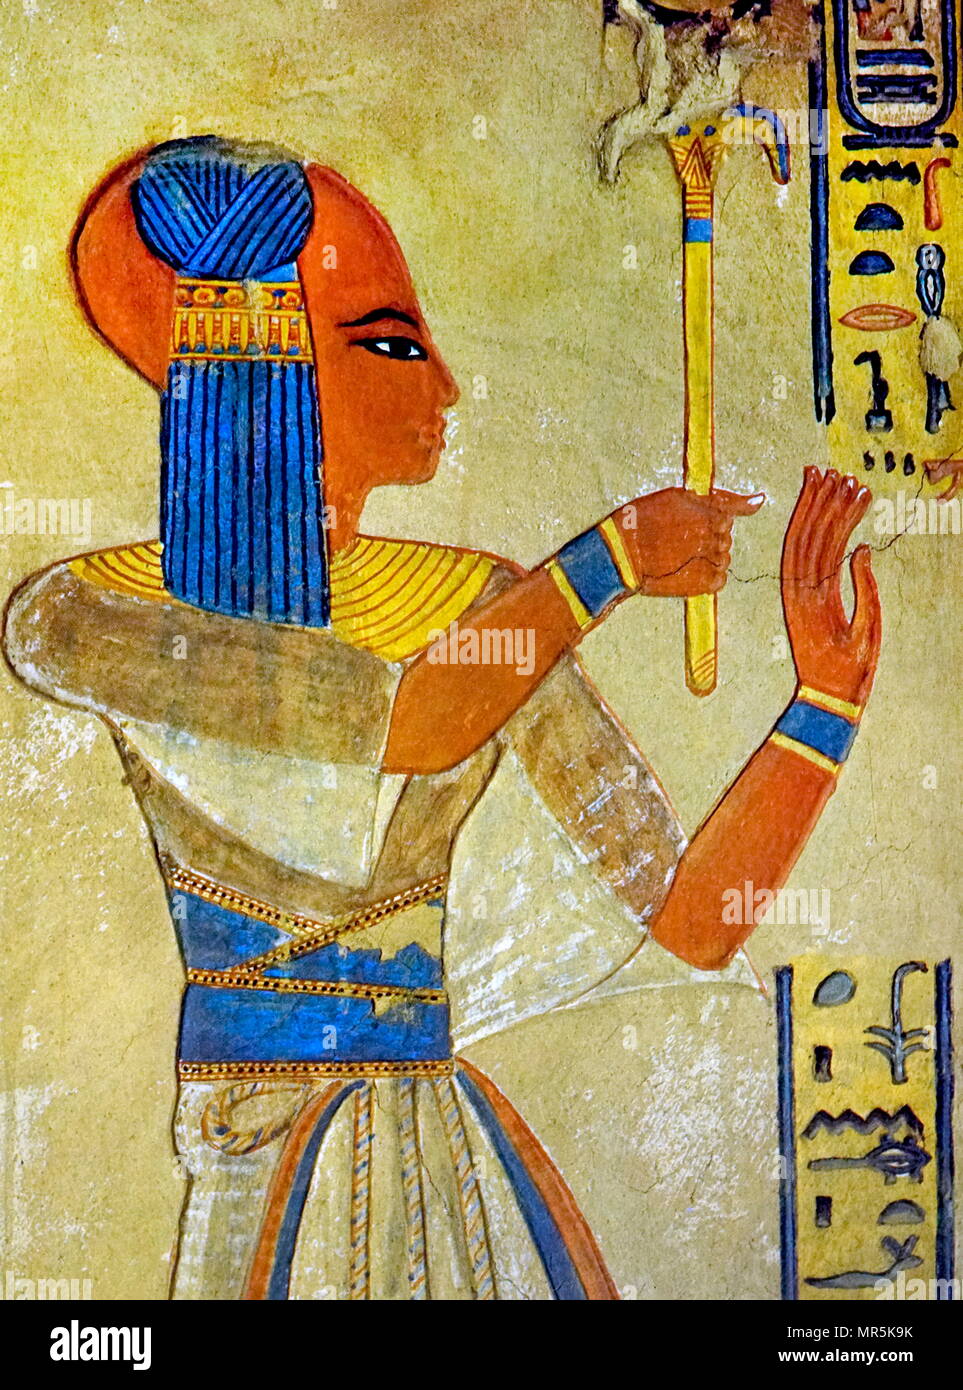 Pittura murale raffigurante il principe Amun-lei-khepeshef il figlio più anziano e designato erede del faraone Ramesse III. Come molti dei suoi fratelli, egli è stato chiamato dopo un figlio di Ramesse II, Amunherkhepeshef. Morì quando aveva circa quindici anni. Egli è anche ricordato come Ramesse Amun-lei-khepeshef. Egli non è identico con suo fratello Ramesse VI, che era chiamato anche Amun-lei-khepeshef prima divenne faraone. Egli è raffigurato nella sua ben conservata tomba, QV55 (nella Valle delle Regine) ha vissuto nel xx dinastia e morì circa 1160 BC Foto Stock